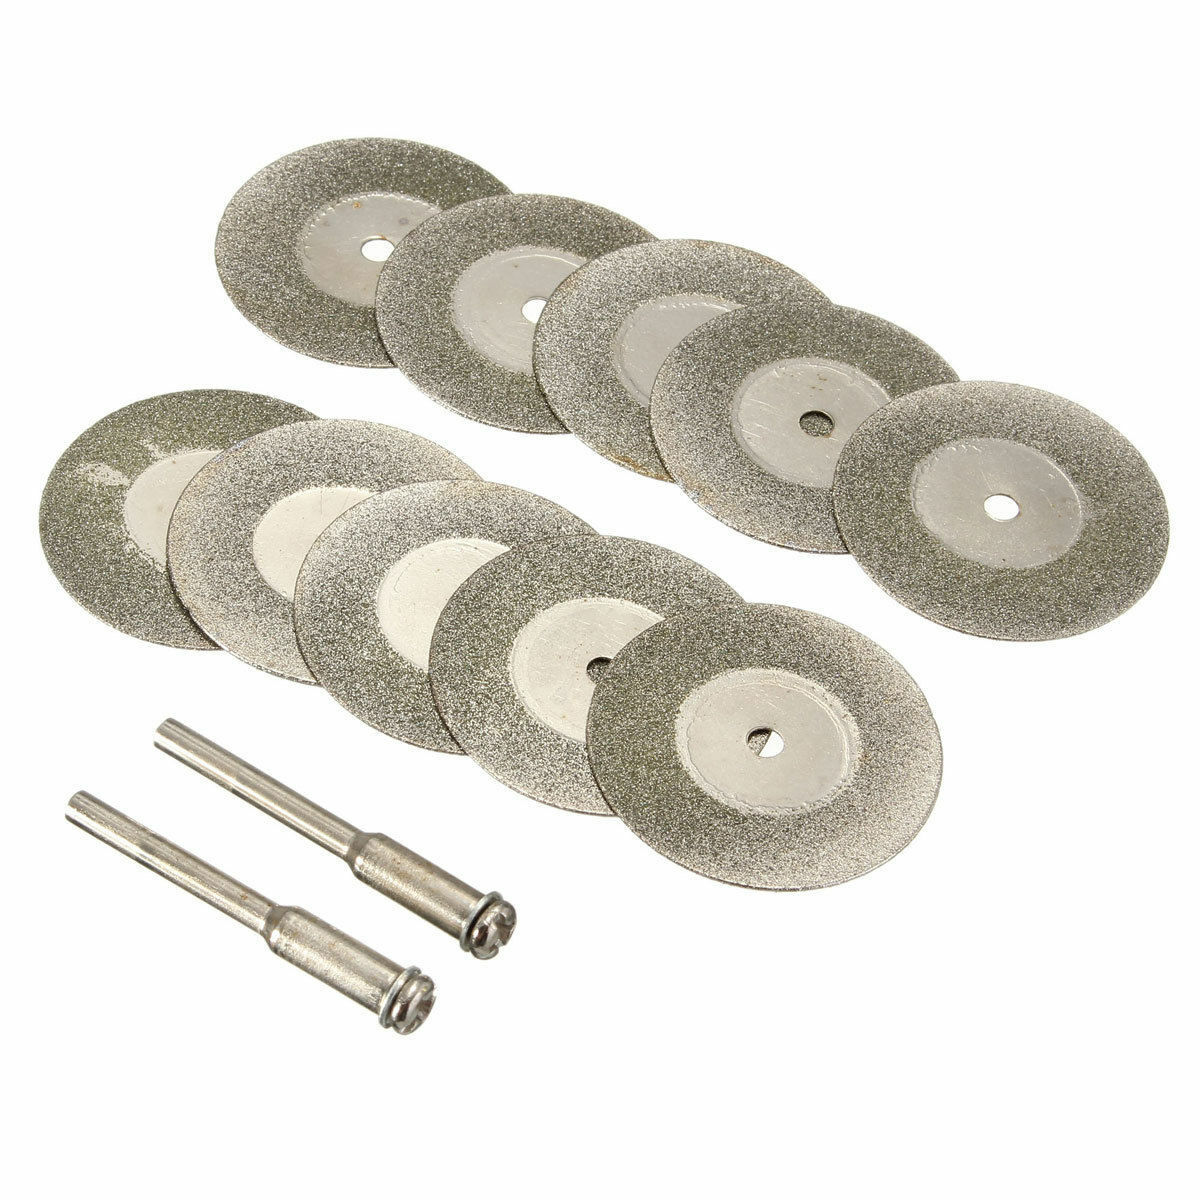 10PCS  Cutting Wheel Set for Mini Drill Dremel Rotary Tool Accessories w/ Mandre